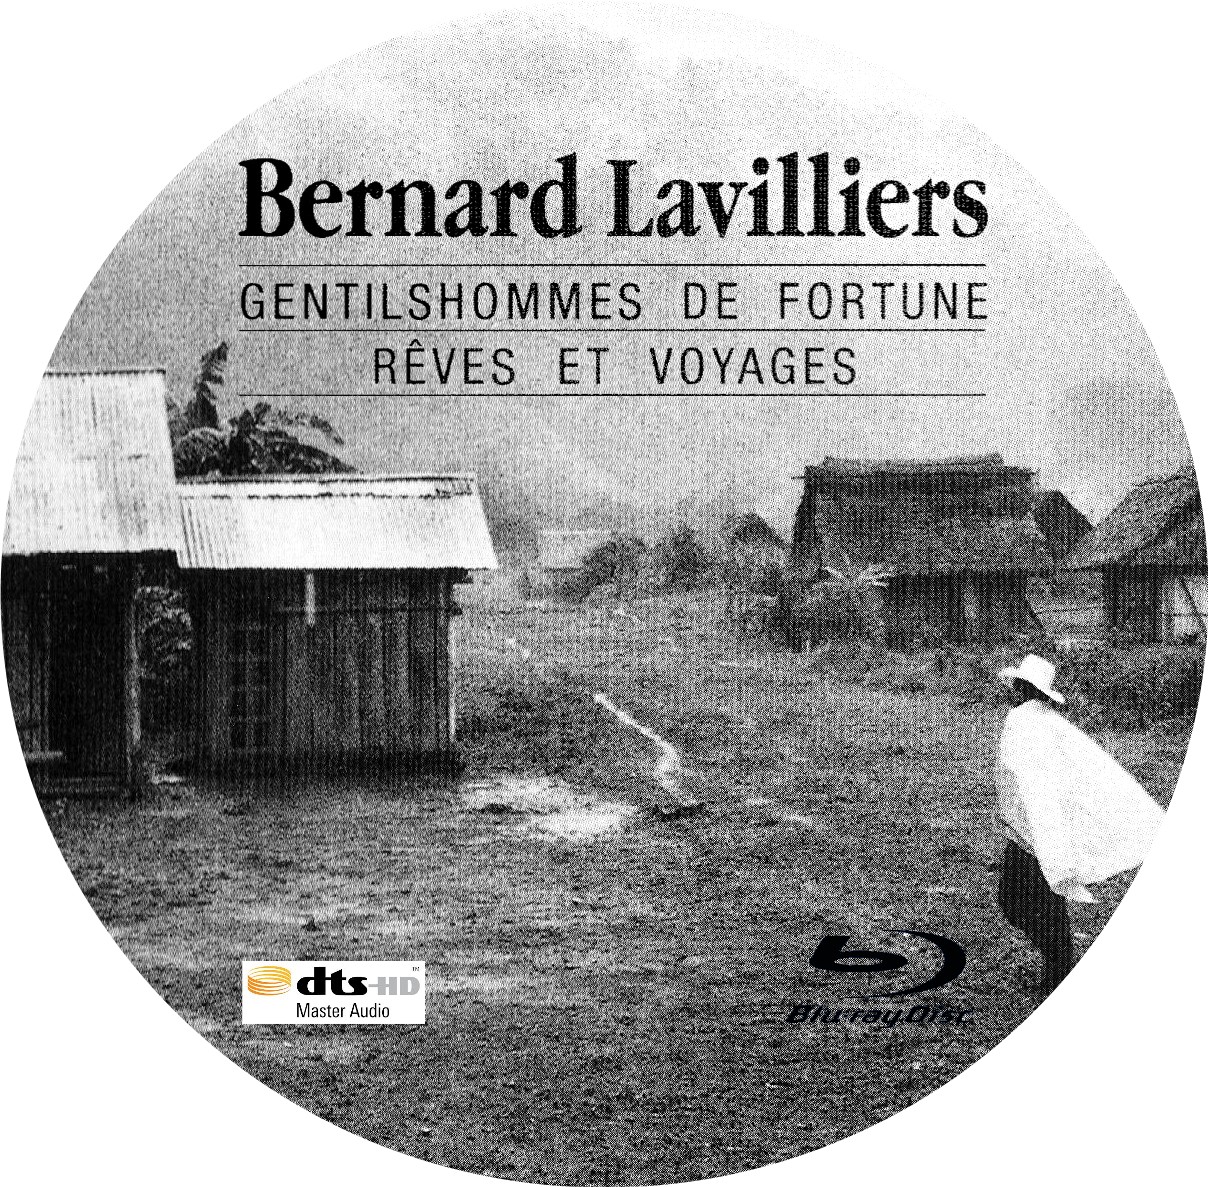 Bernard Lavilliers - Gentilshommes de fortune (BLU-RAY)